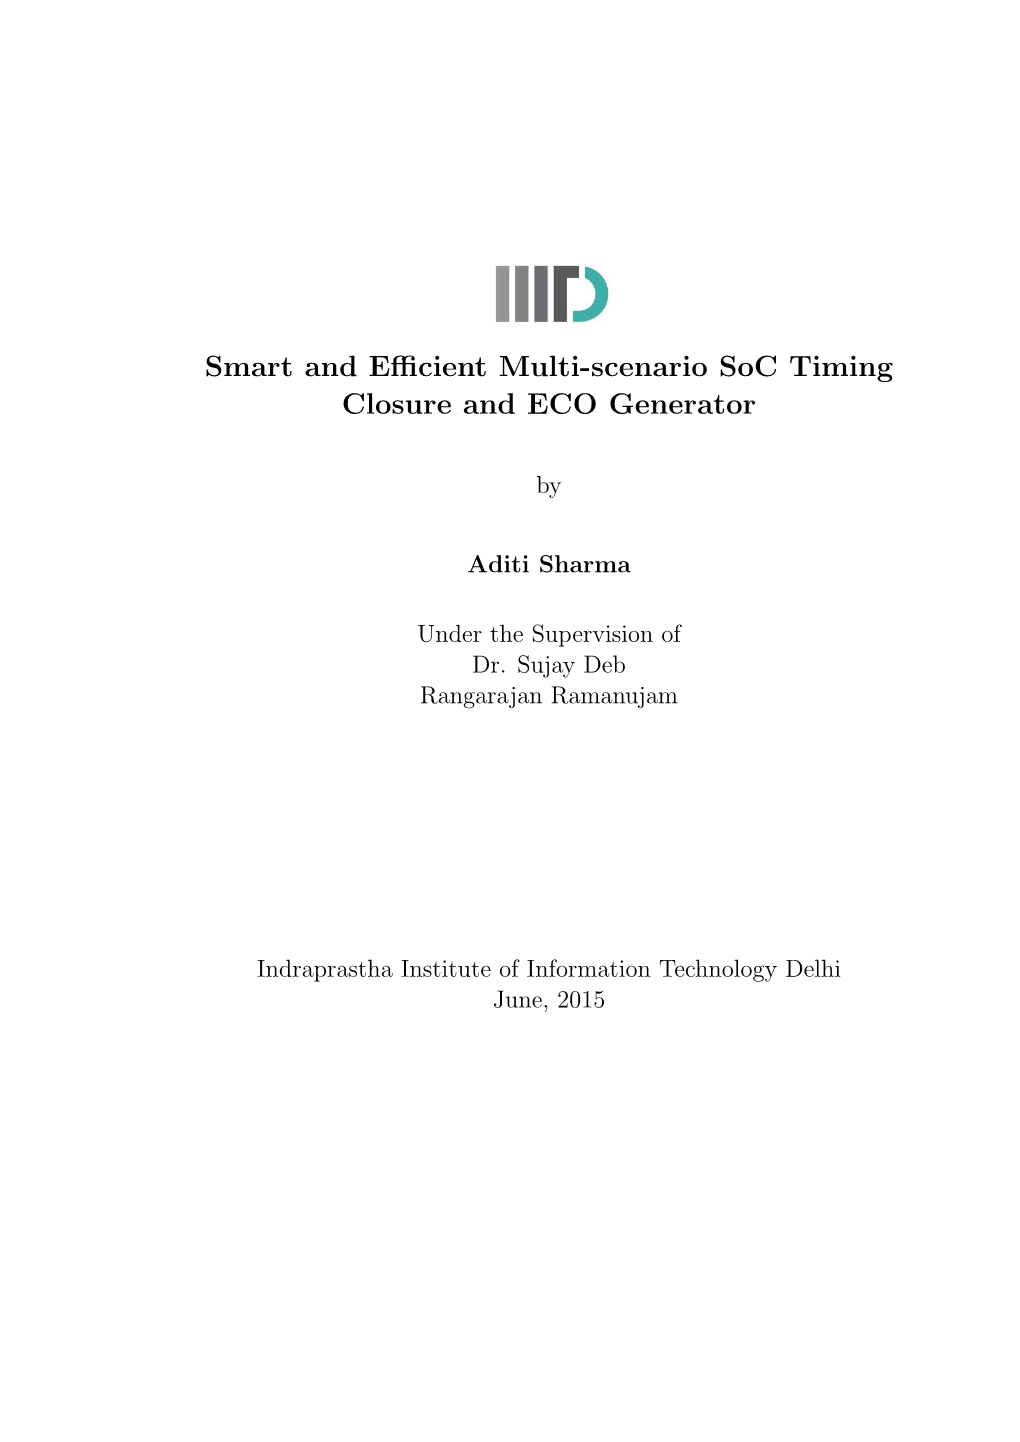 Smart and Efficient Multi-Scenario Soc Timing Closure and ECO Generator